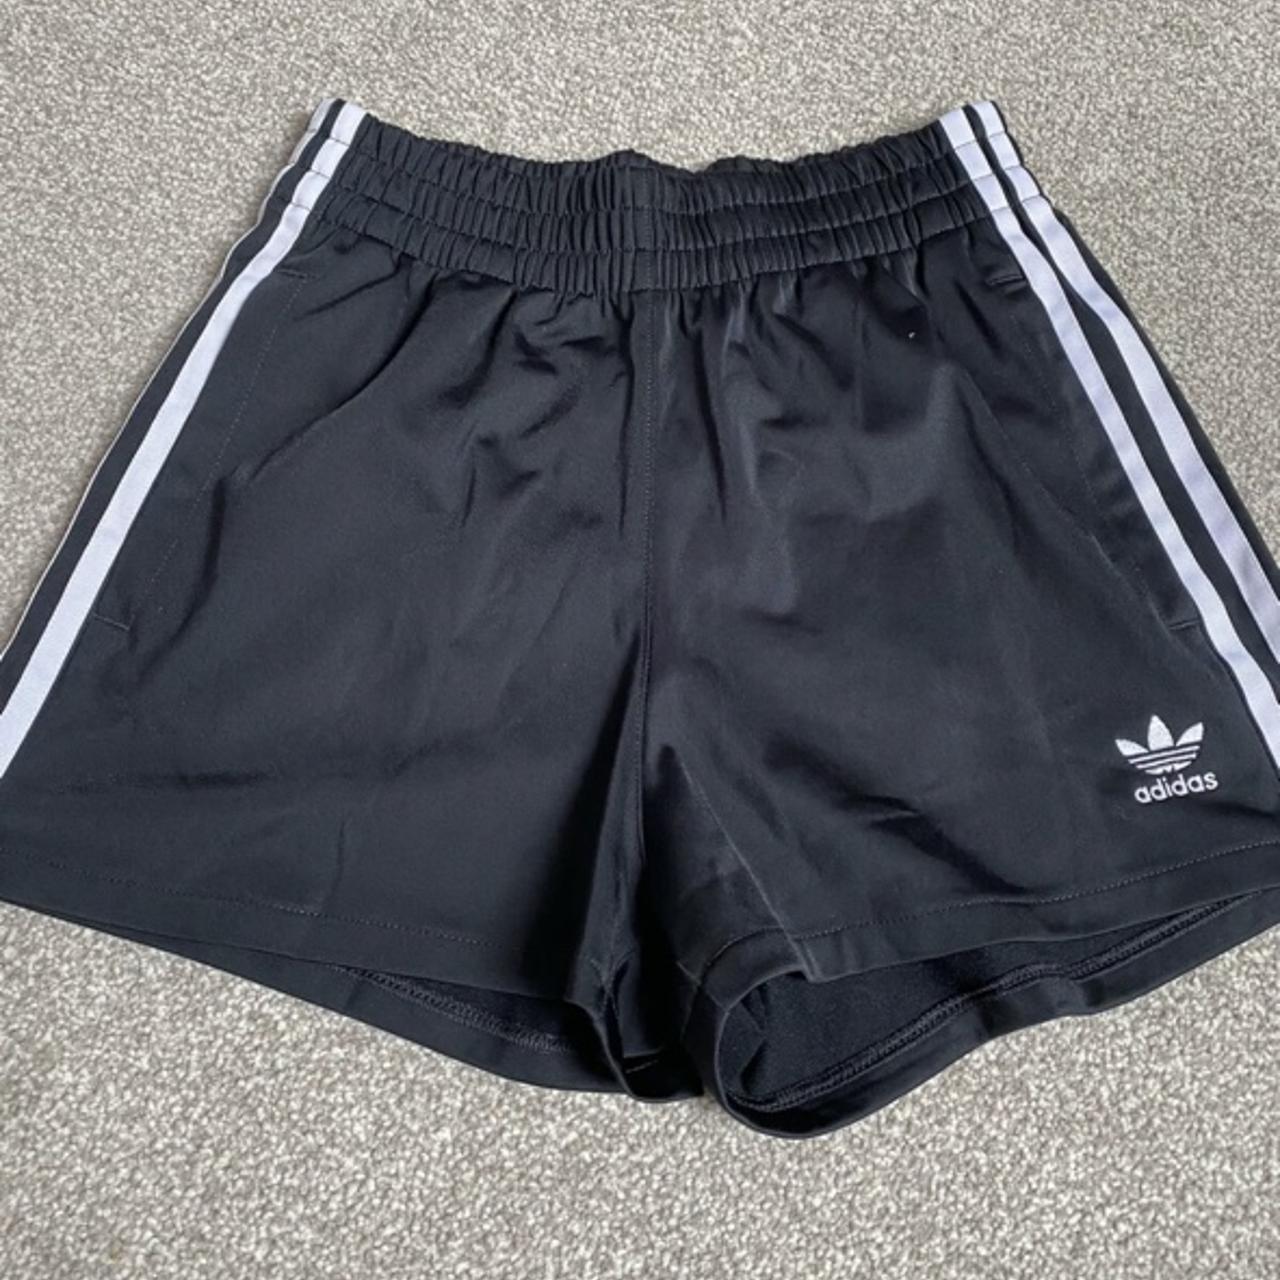 Asos Adidas JD black 3 stripe shorts size XS / 4 on... - Depop